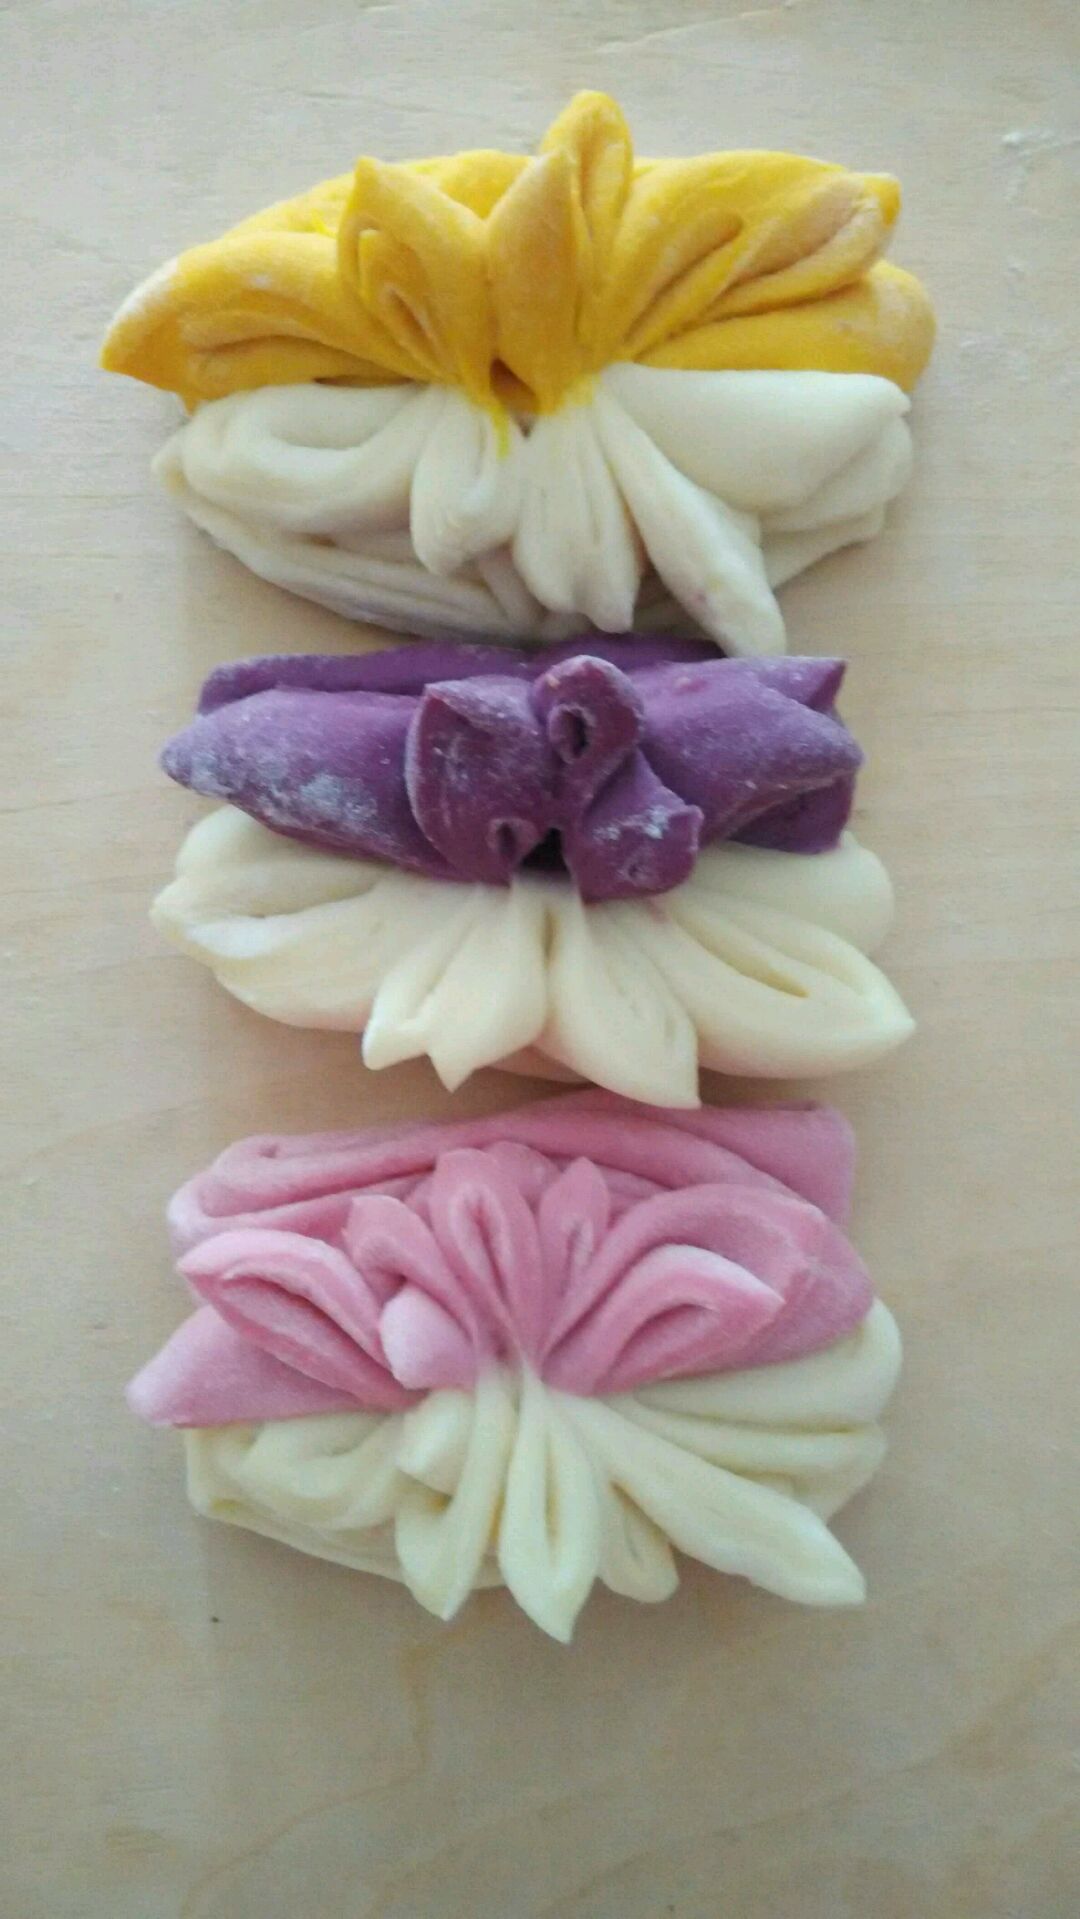 紫薯花卷怎么做_紫薯花卷的做法_豆果美食